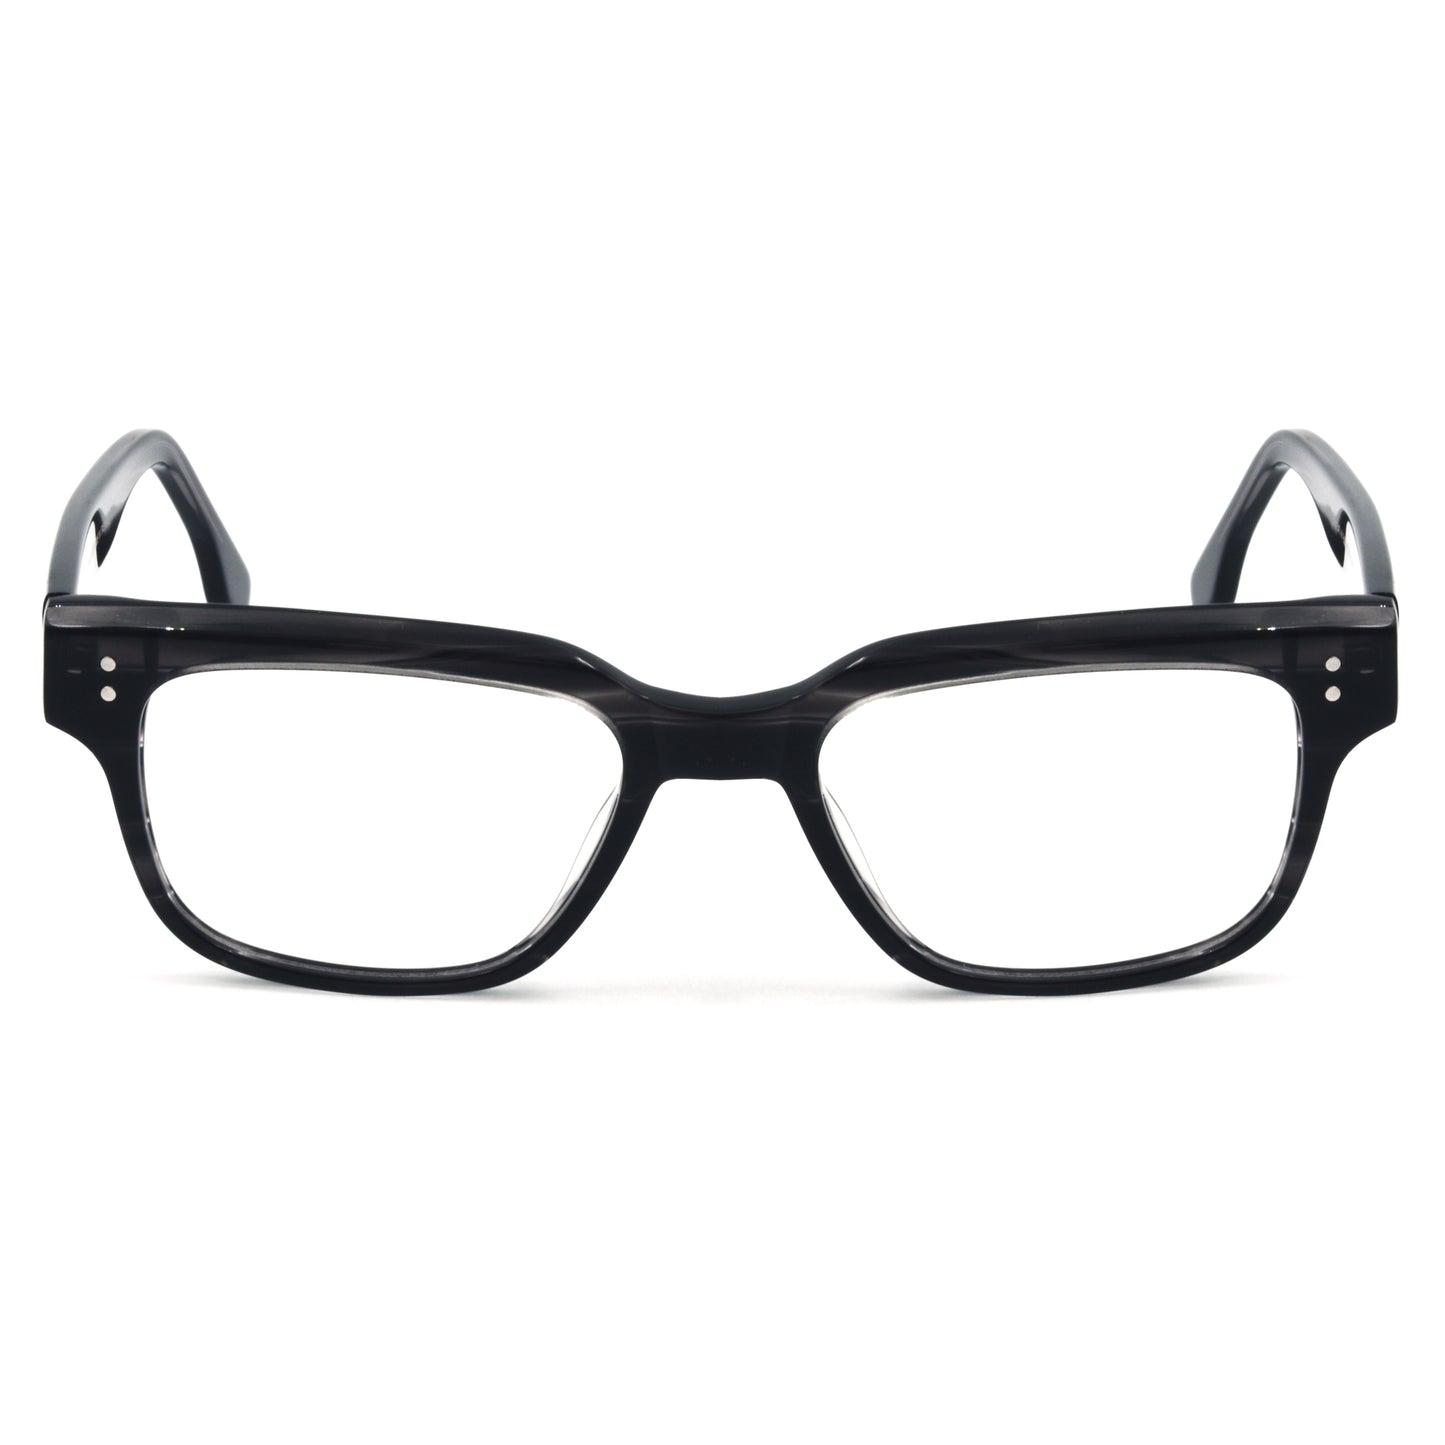 Trendy Stylish Optic Frame | TFord Frame 41 | Premium Quality Eye Glass